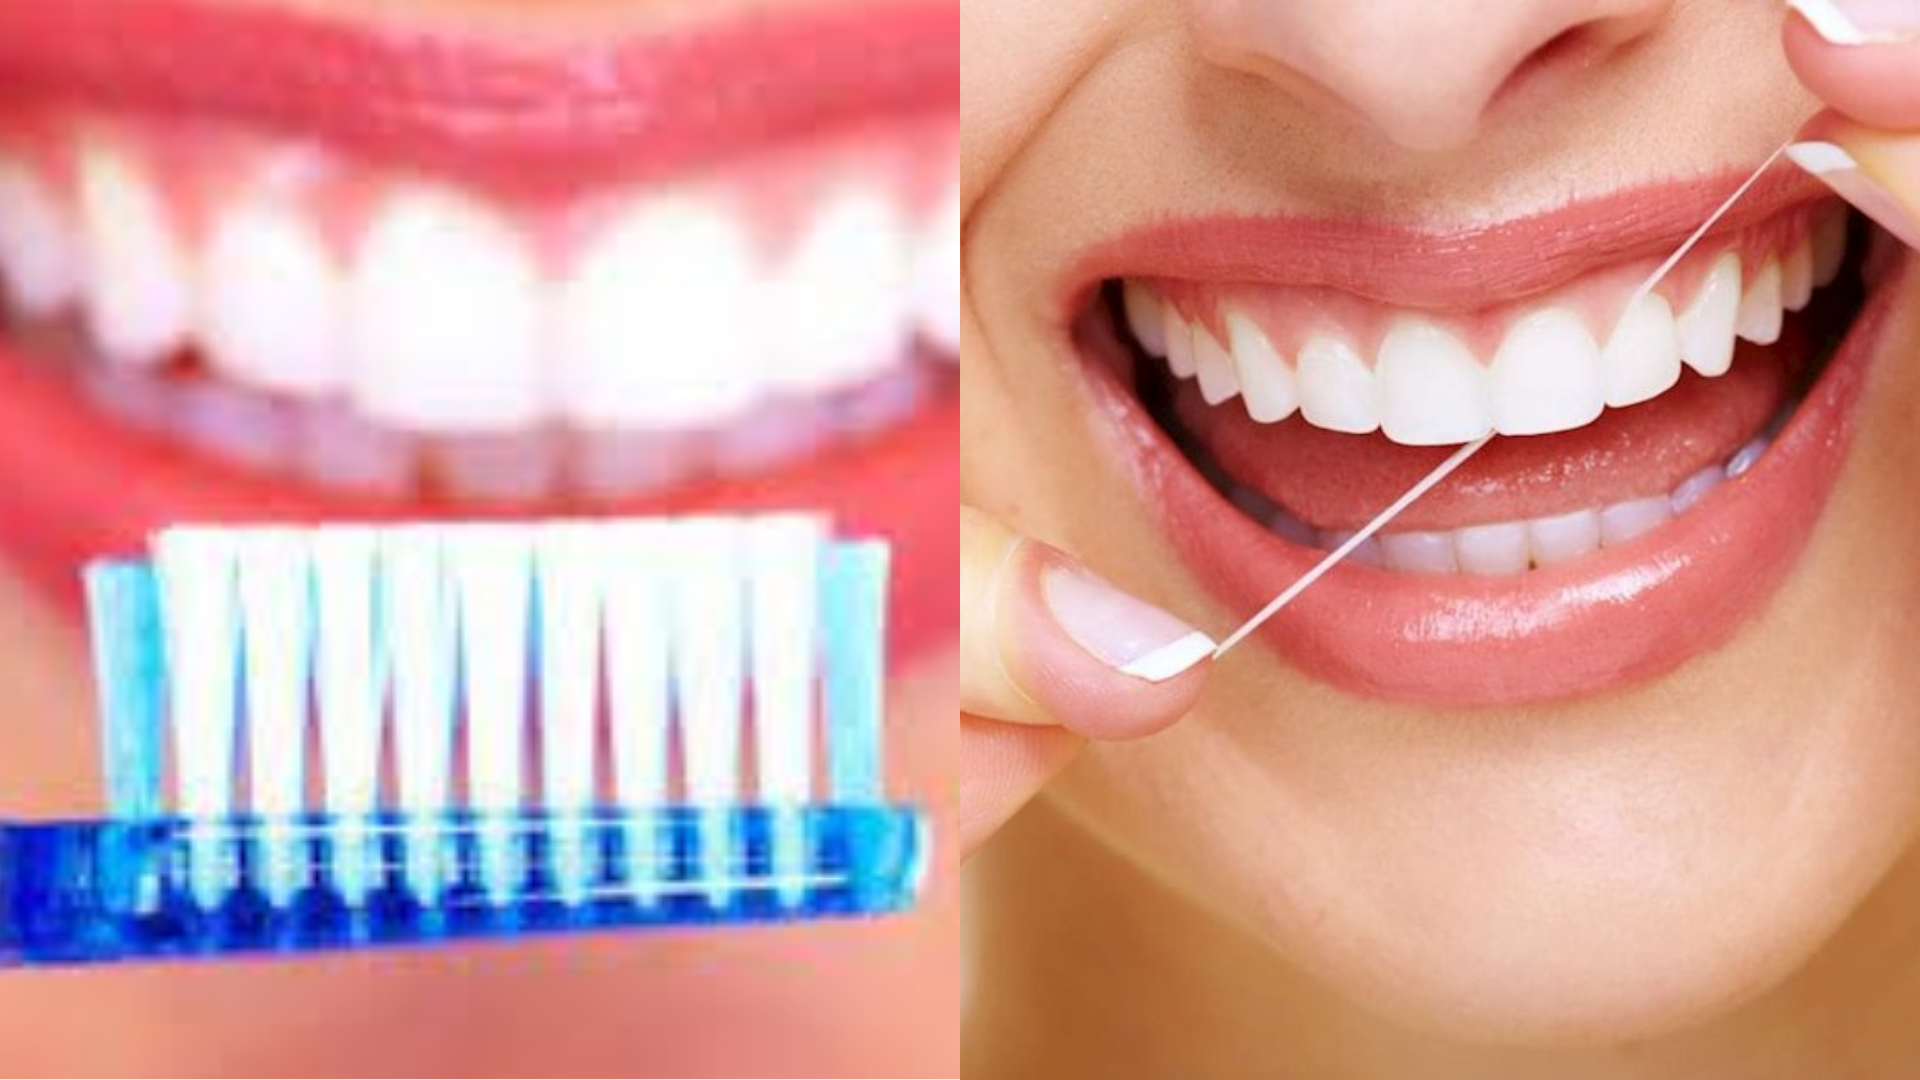 Đánh răng và chỉ nha khoa là phương pháp quen thuộc giúp vệ sinh răng miệng. (Đồ họa: VA)